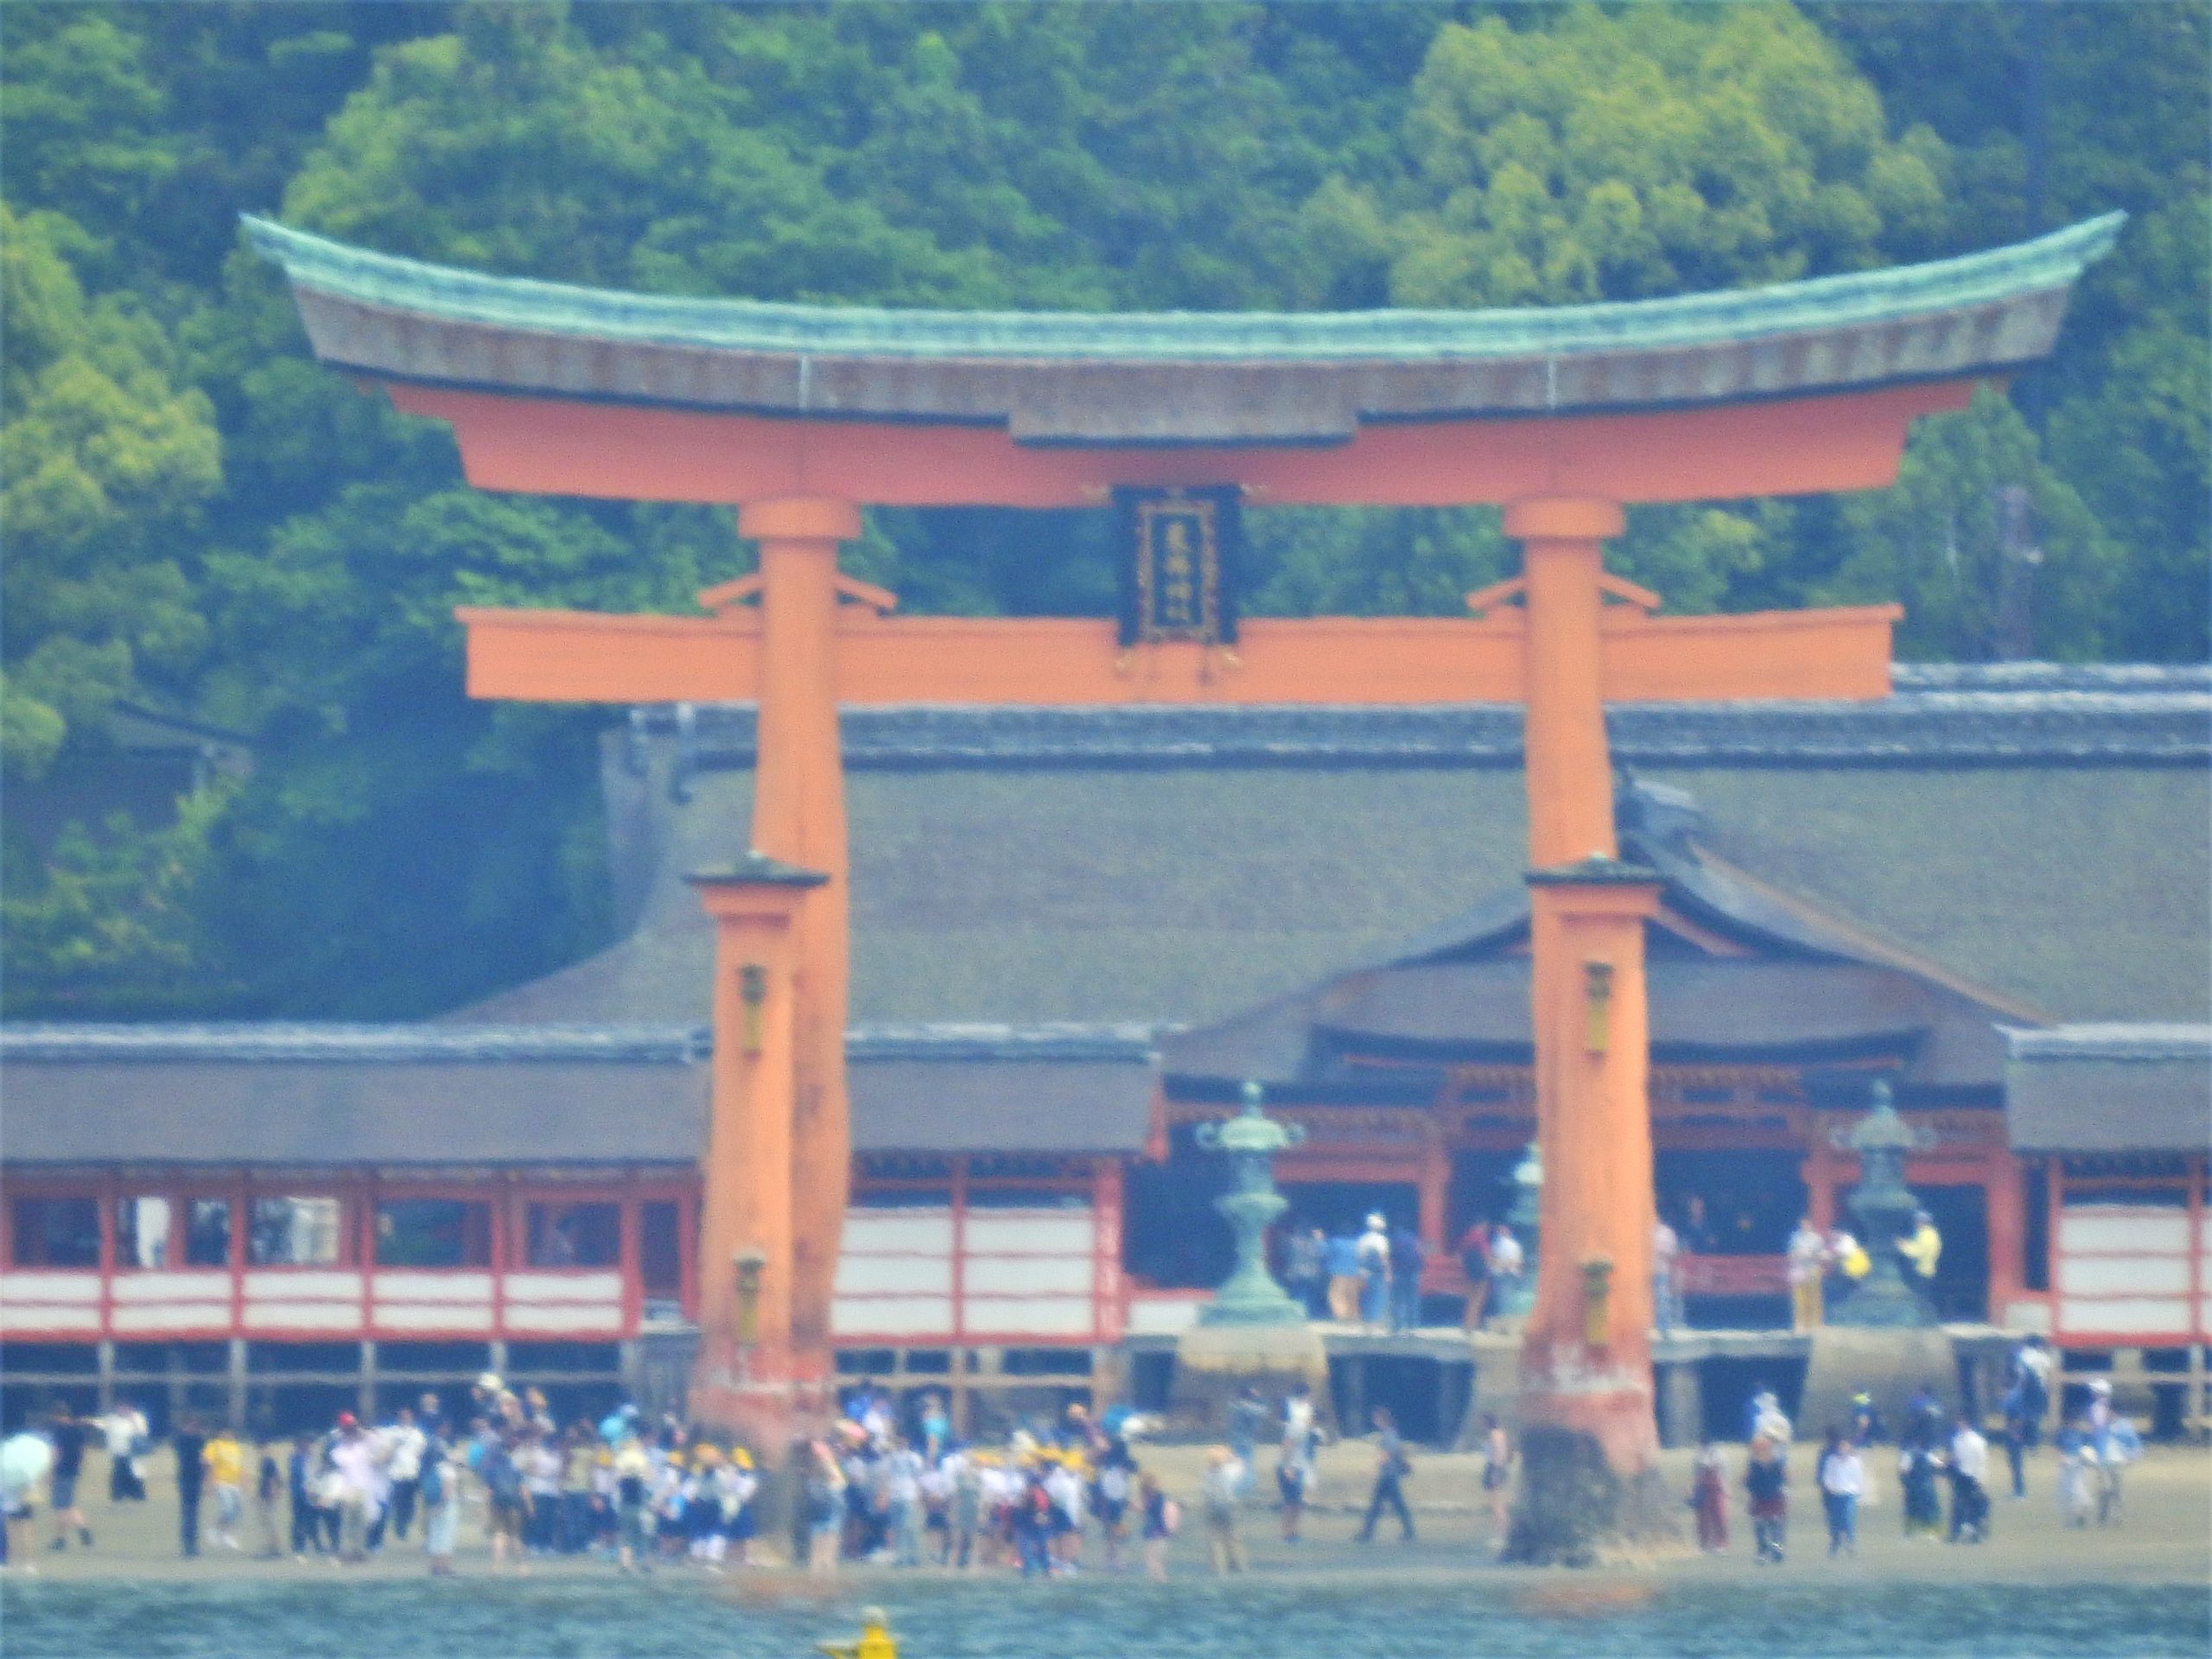 広島県 厳島神社